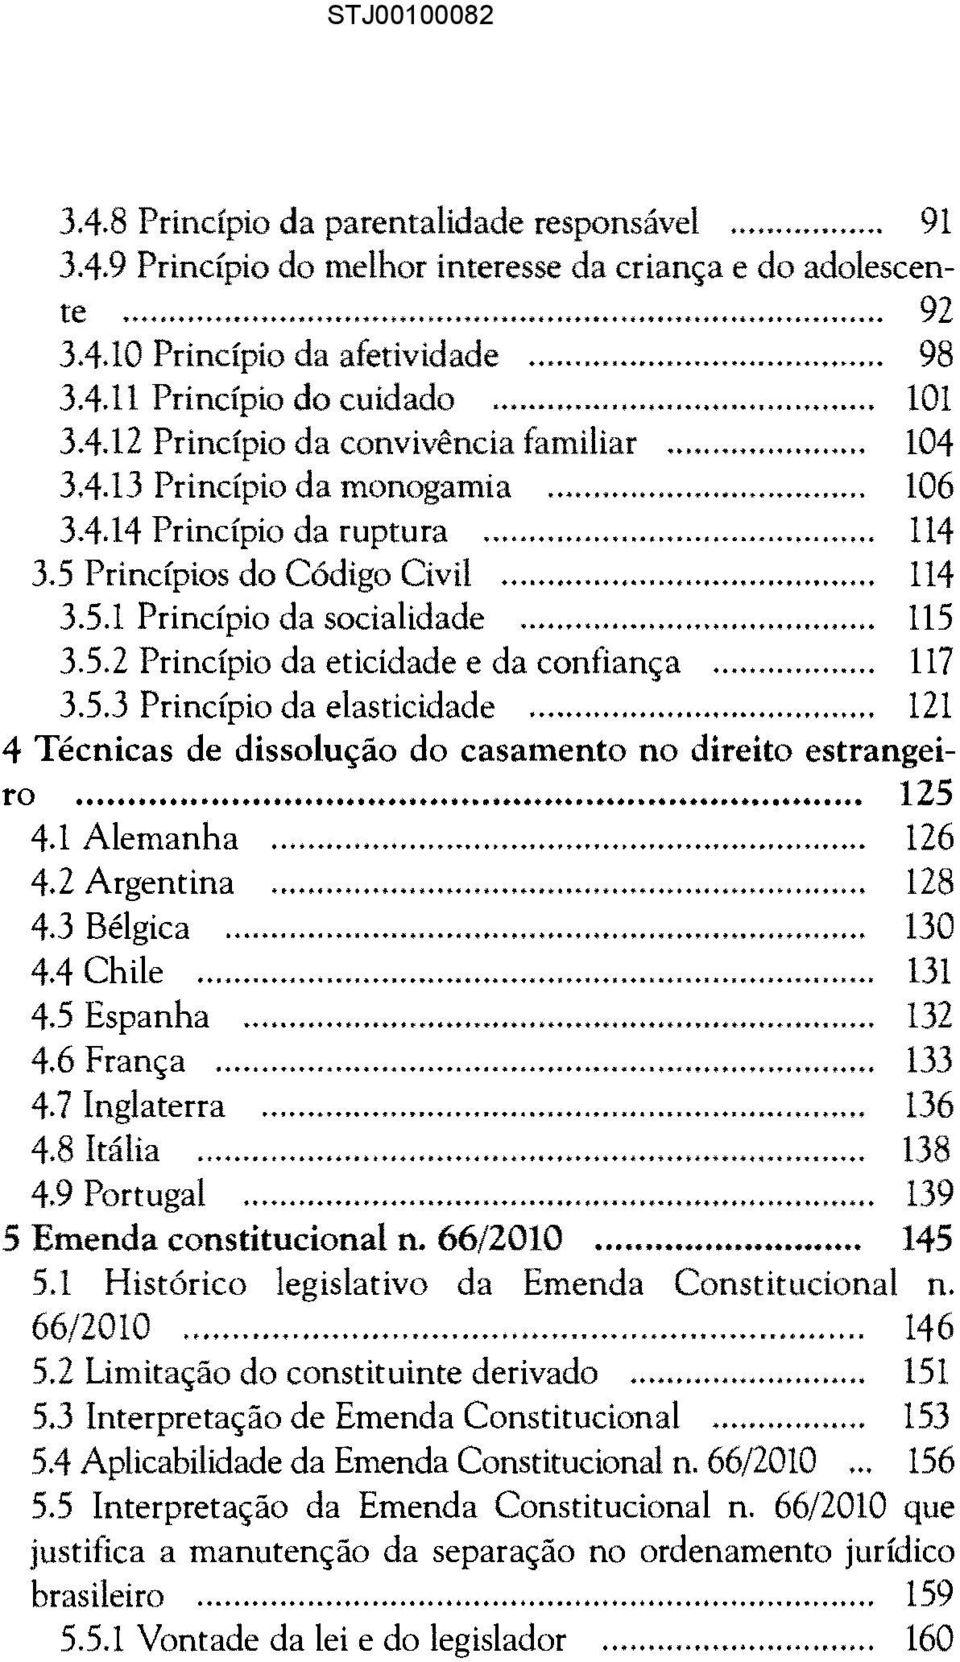 .. 117 3.5.3 Princípio da elasticidade... 121 4 Técnicas de dissolução do casamento no direito estrangeiro... 125 4.1 Alemanha... 126 4.2 Argentina... 128 4.3 Bélgica...... 130 4.4 Chile... 131 4.